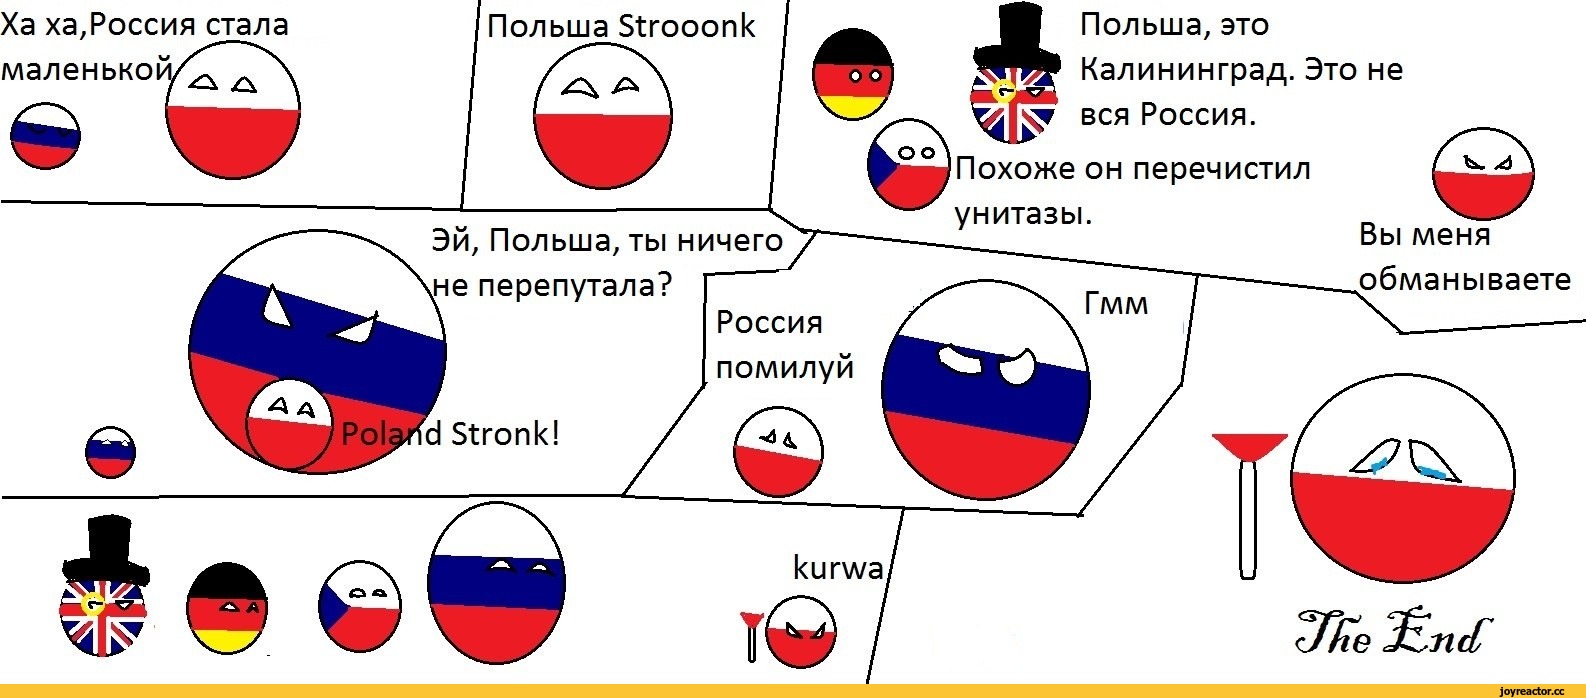 Мемы про Польшу и Россию